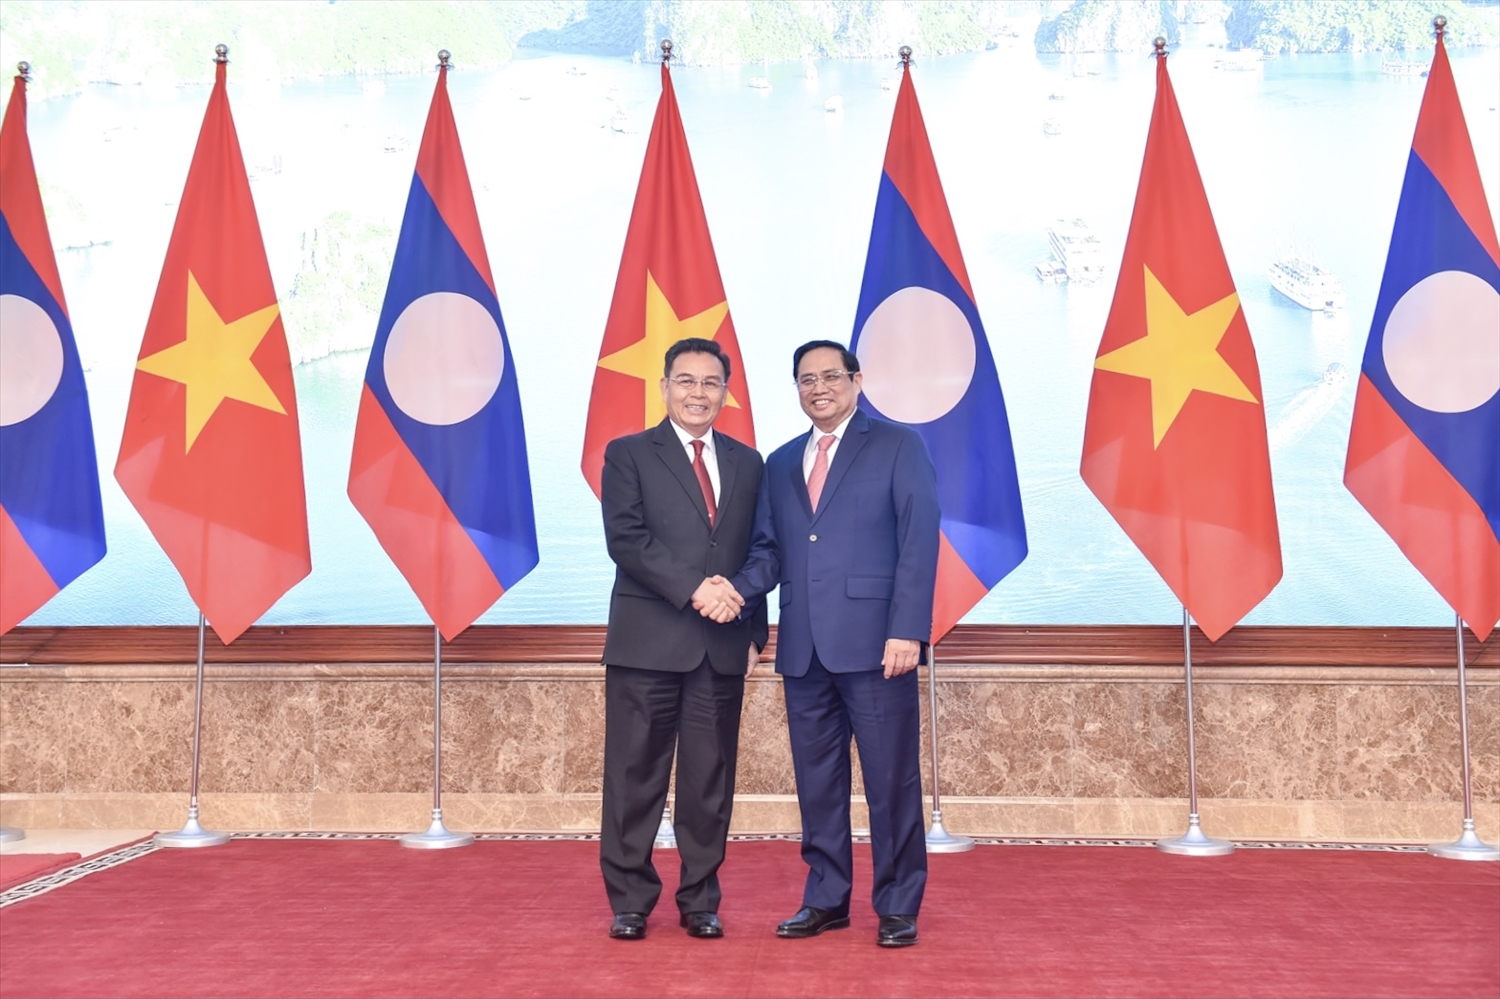 Thủ tướng Phạm Minh Chính nhiệt liệt chào mừng Chủ tịch Quốc hội Saysomphone Phomvihane cùng Đoàn đại biểu cấp cao của Quốc hội Lào sang thăm chính thức Việt Nam - Ảnh: VGP/Nhật Bắc